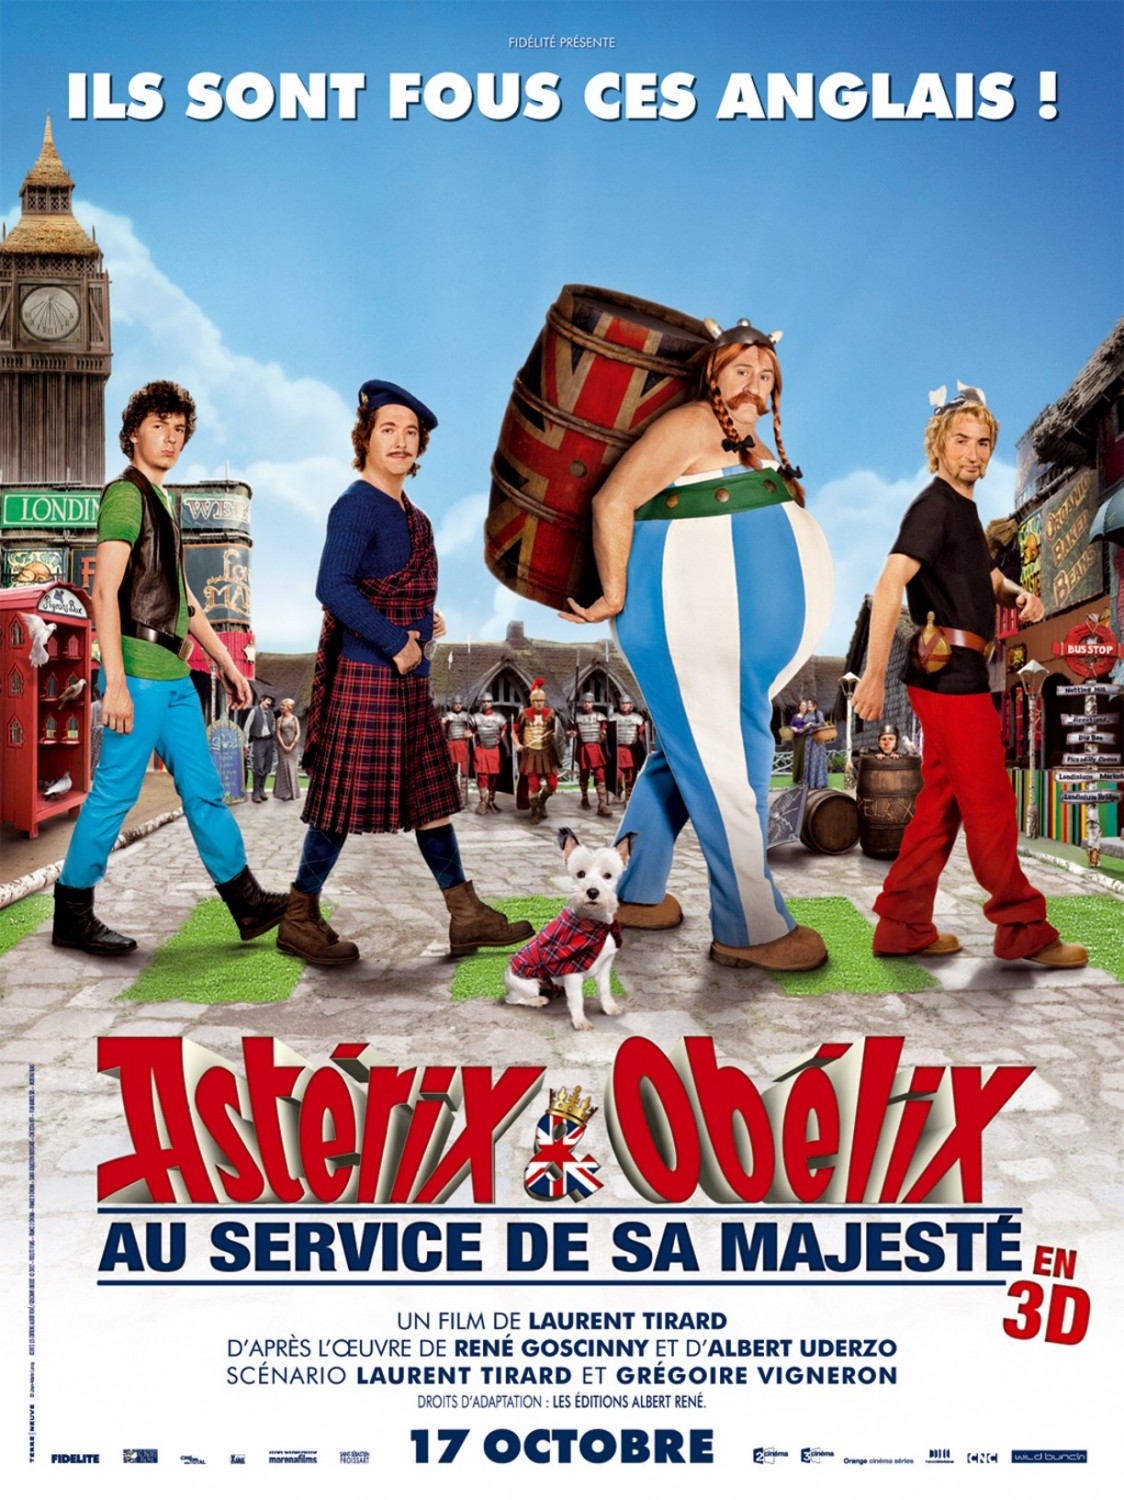 Extra Large Movie Poster Image for Astérix et Obélix: Au Service de Sa Majesté (#1 of 3)